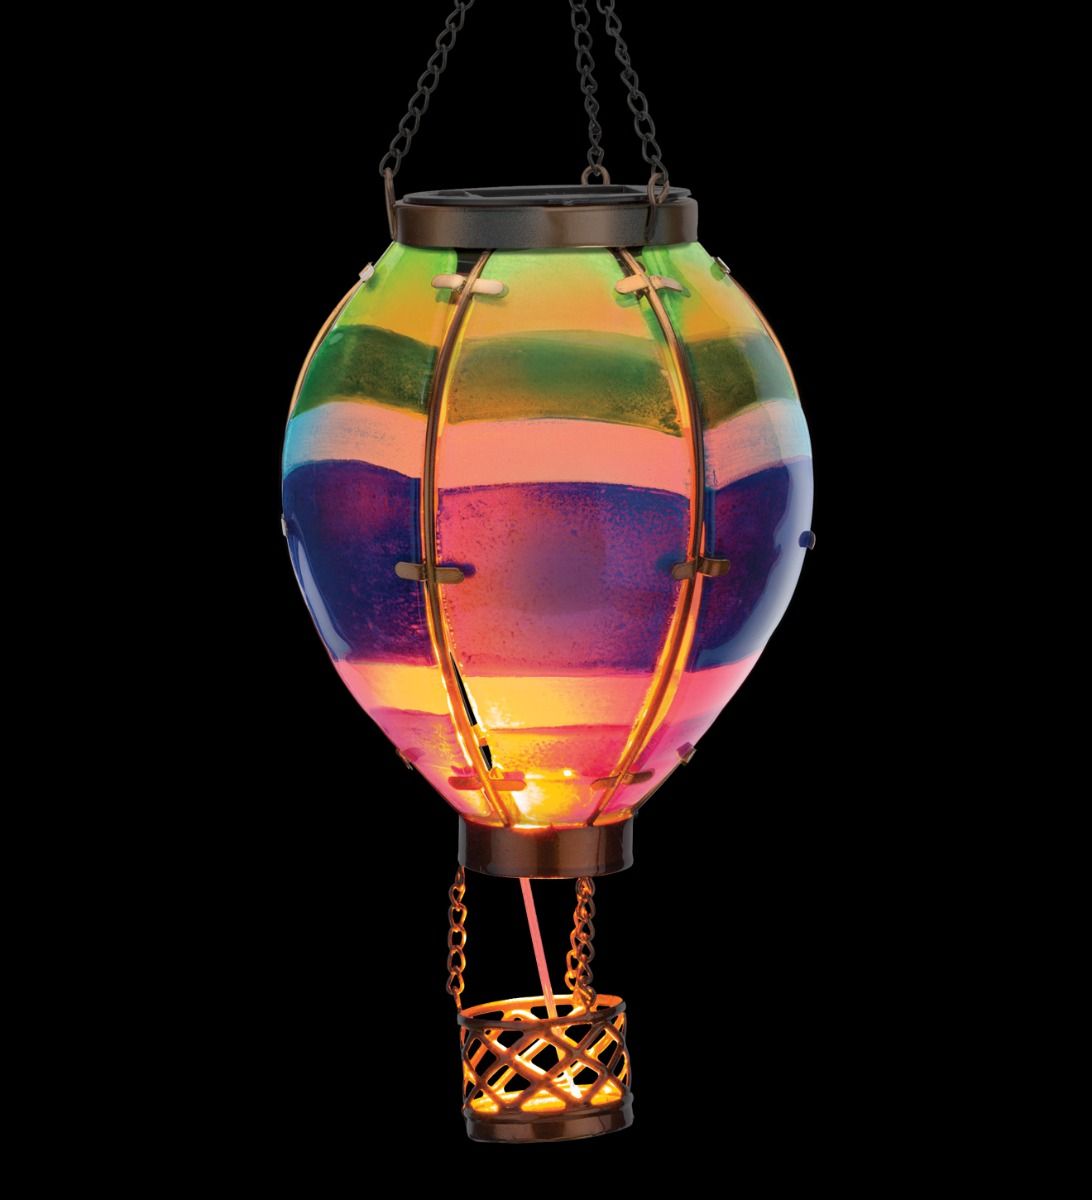 Stripe Hot Air Balloon Hanging Solar Lantern